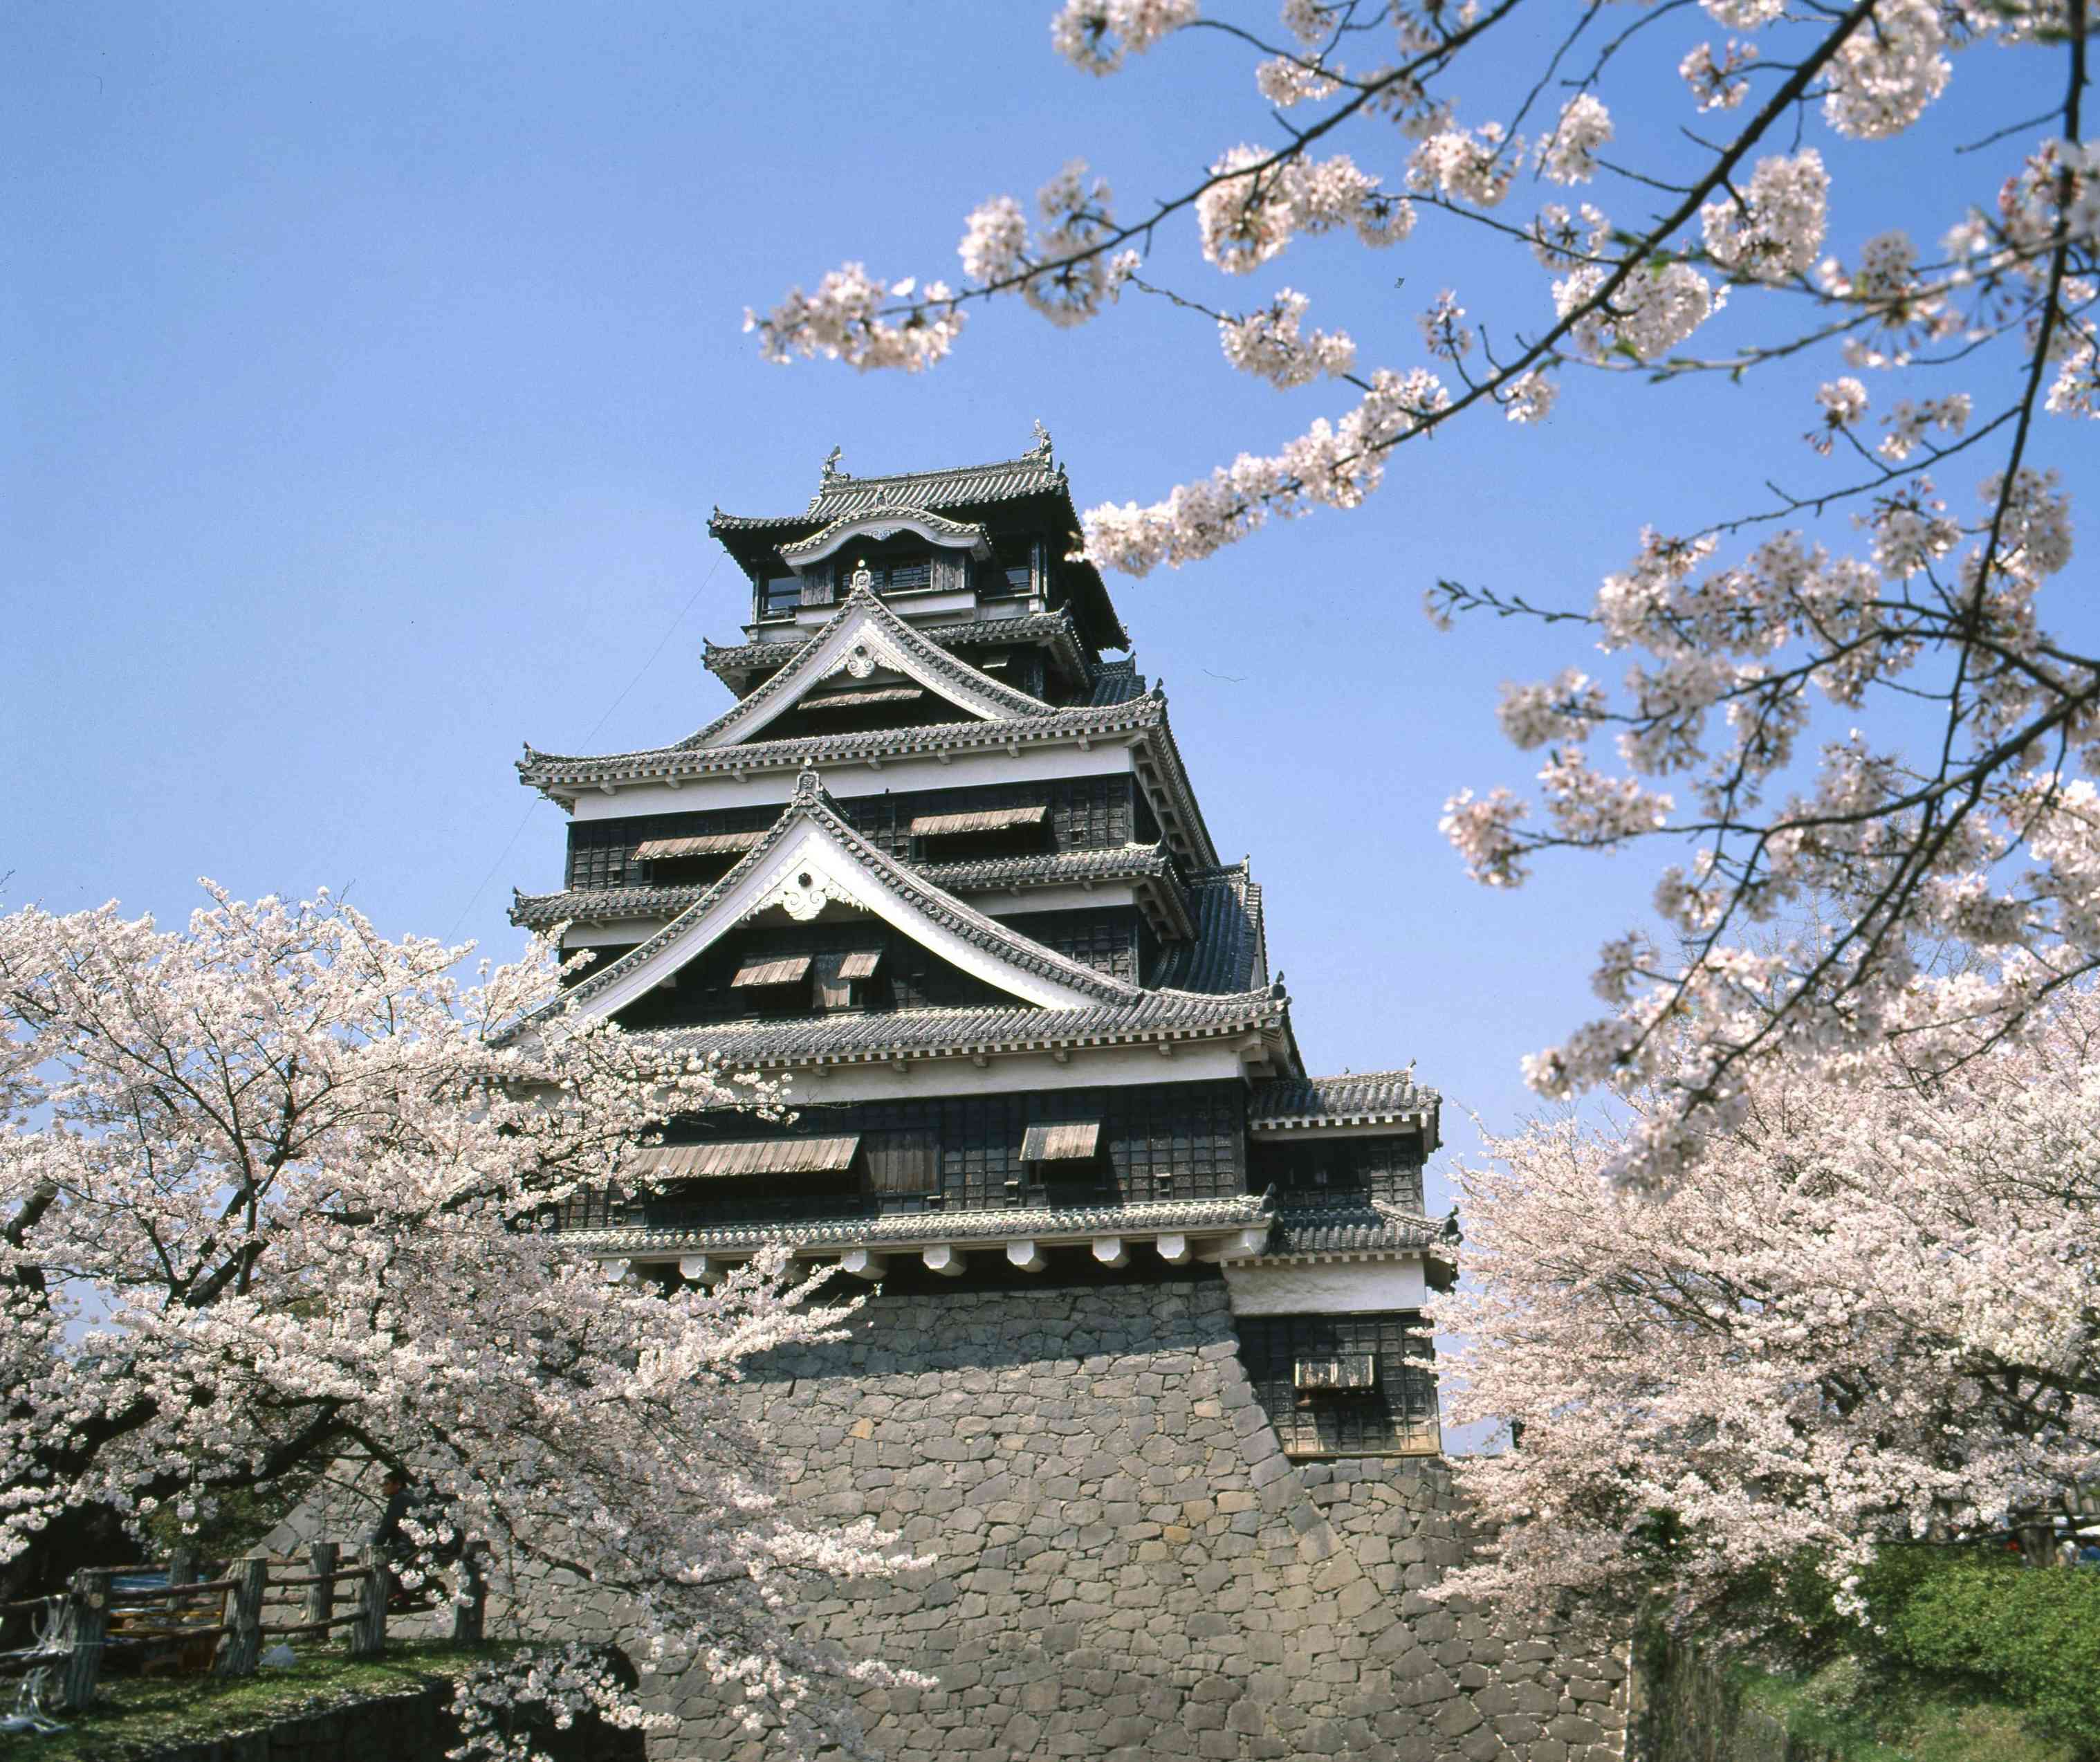 熊本地震で被災する前の熊本城天守閣（大天守）と満開の桜。地震後、テレビタミンには、この姿をもう一度見たいという声が多数寄せられた